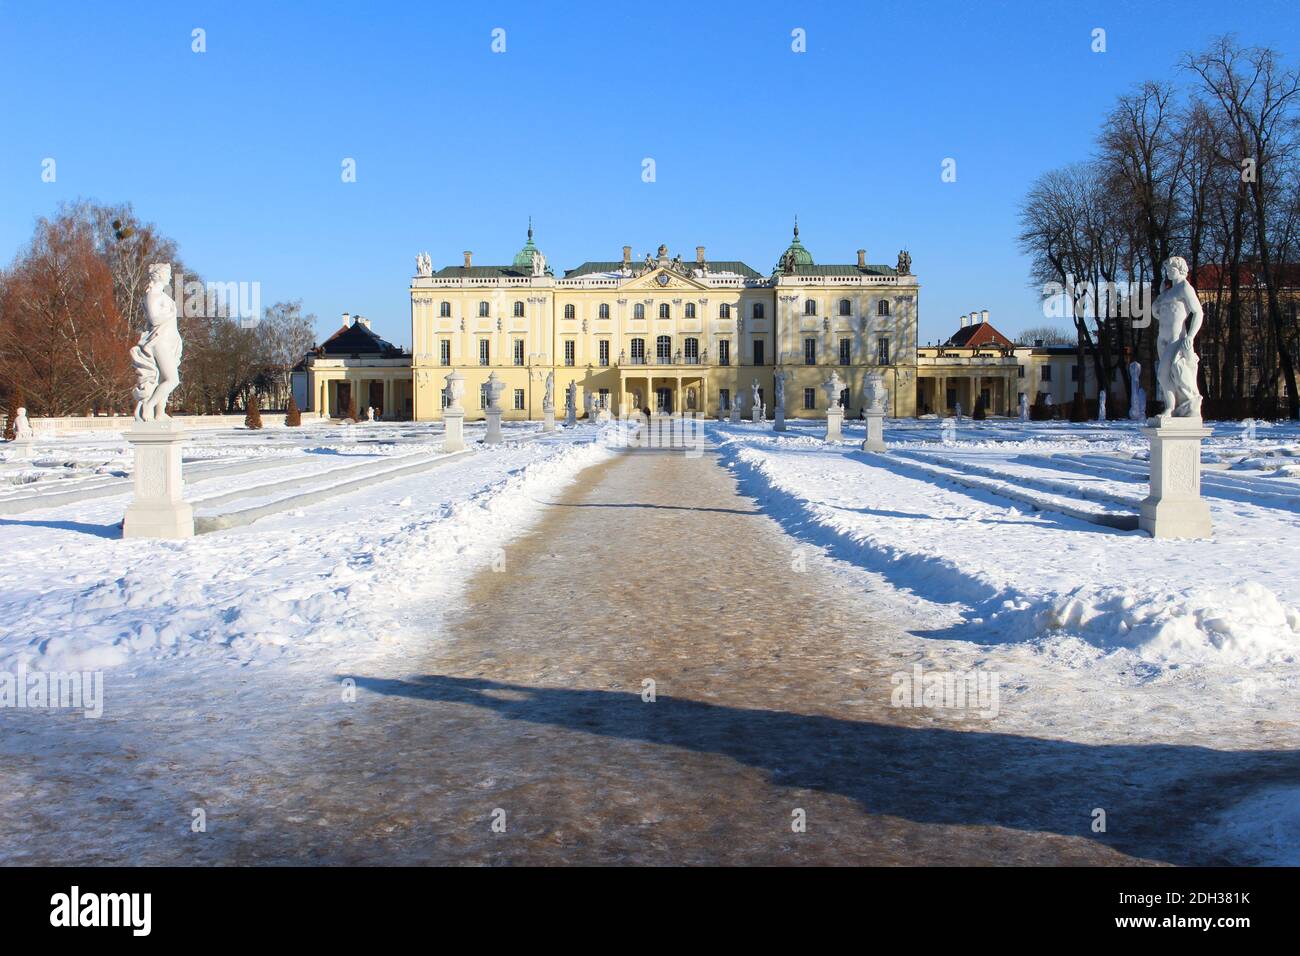 Pałac Branickich during winter, Białystok Stock Photo